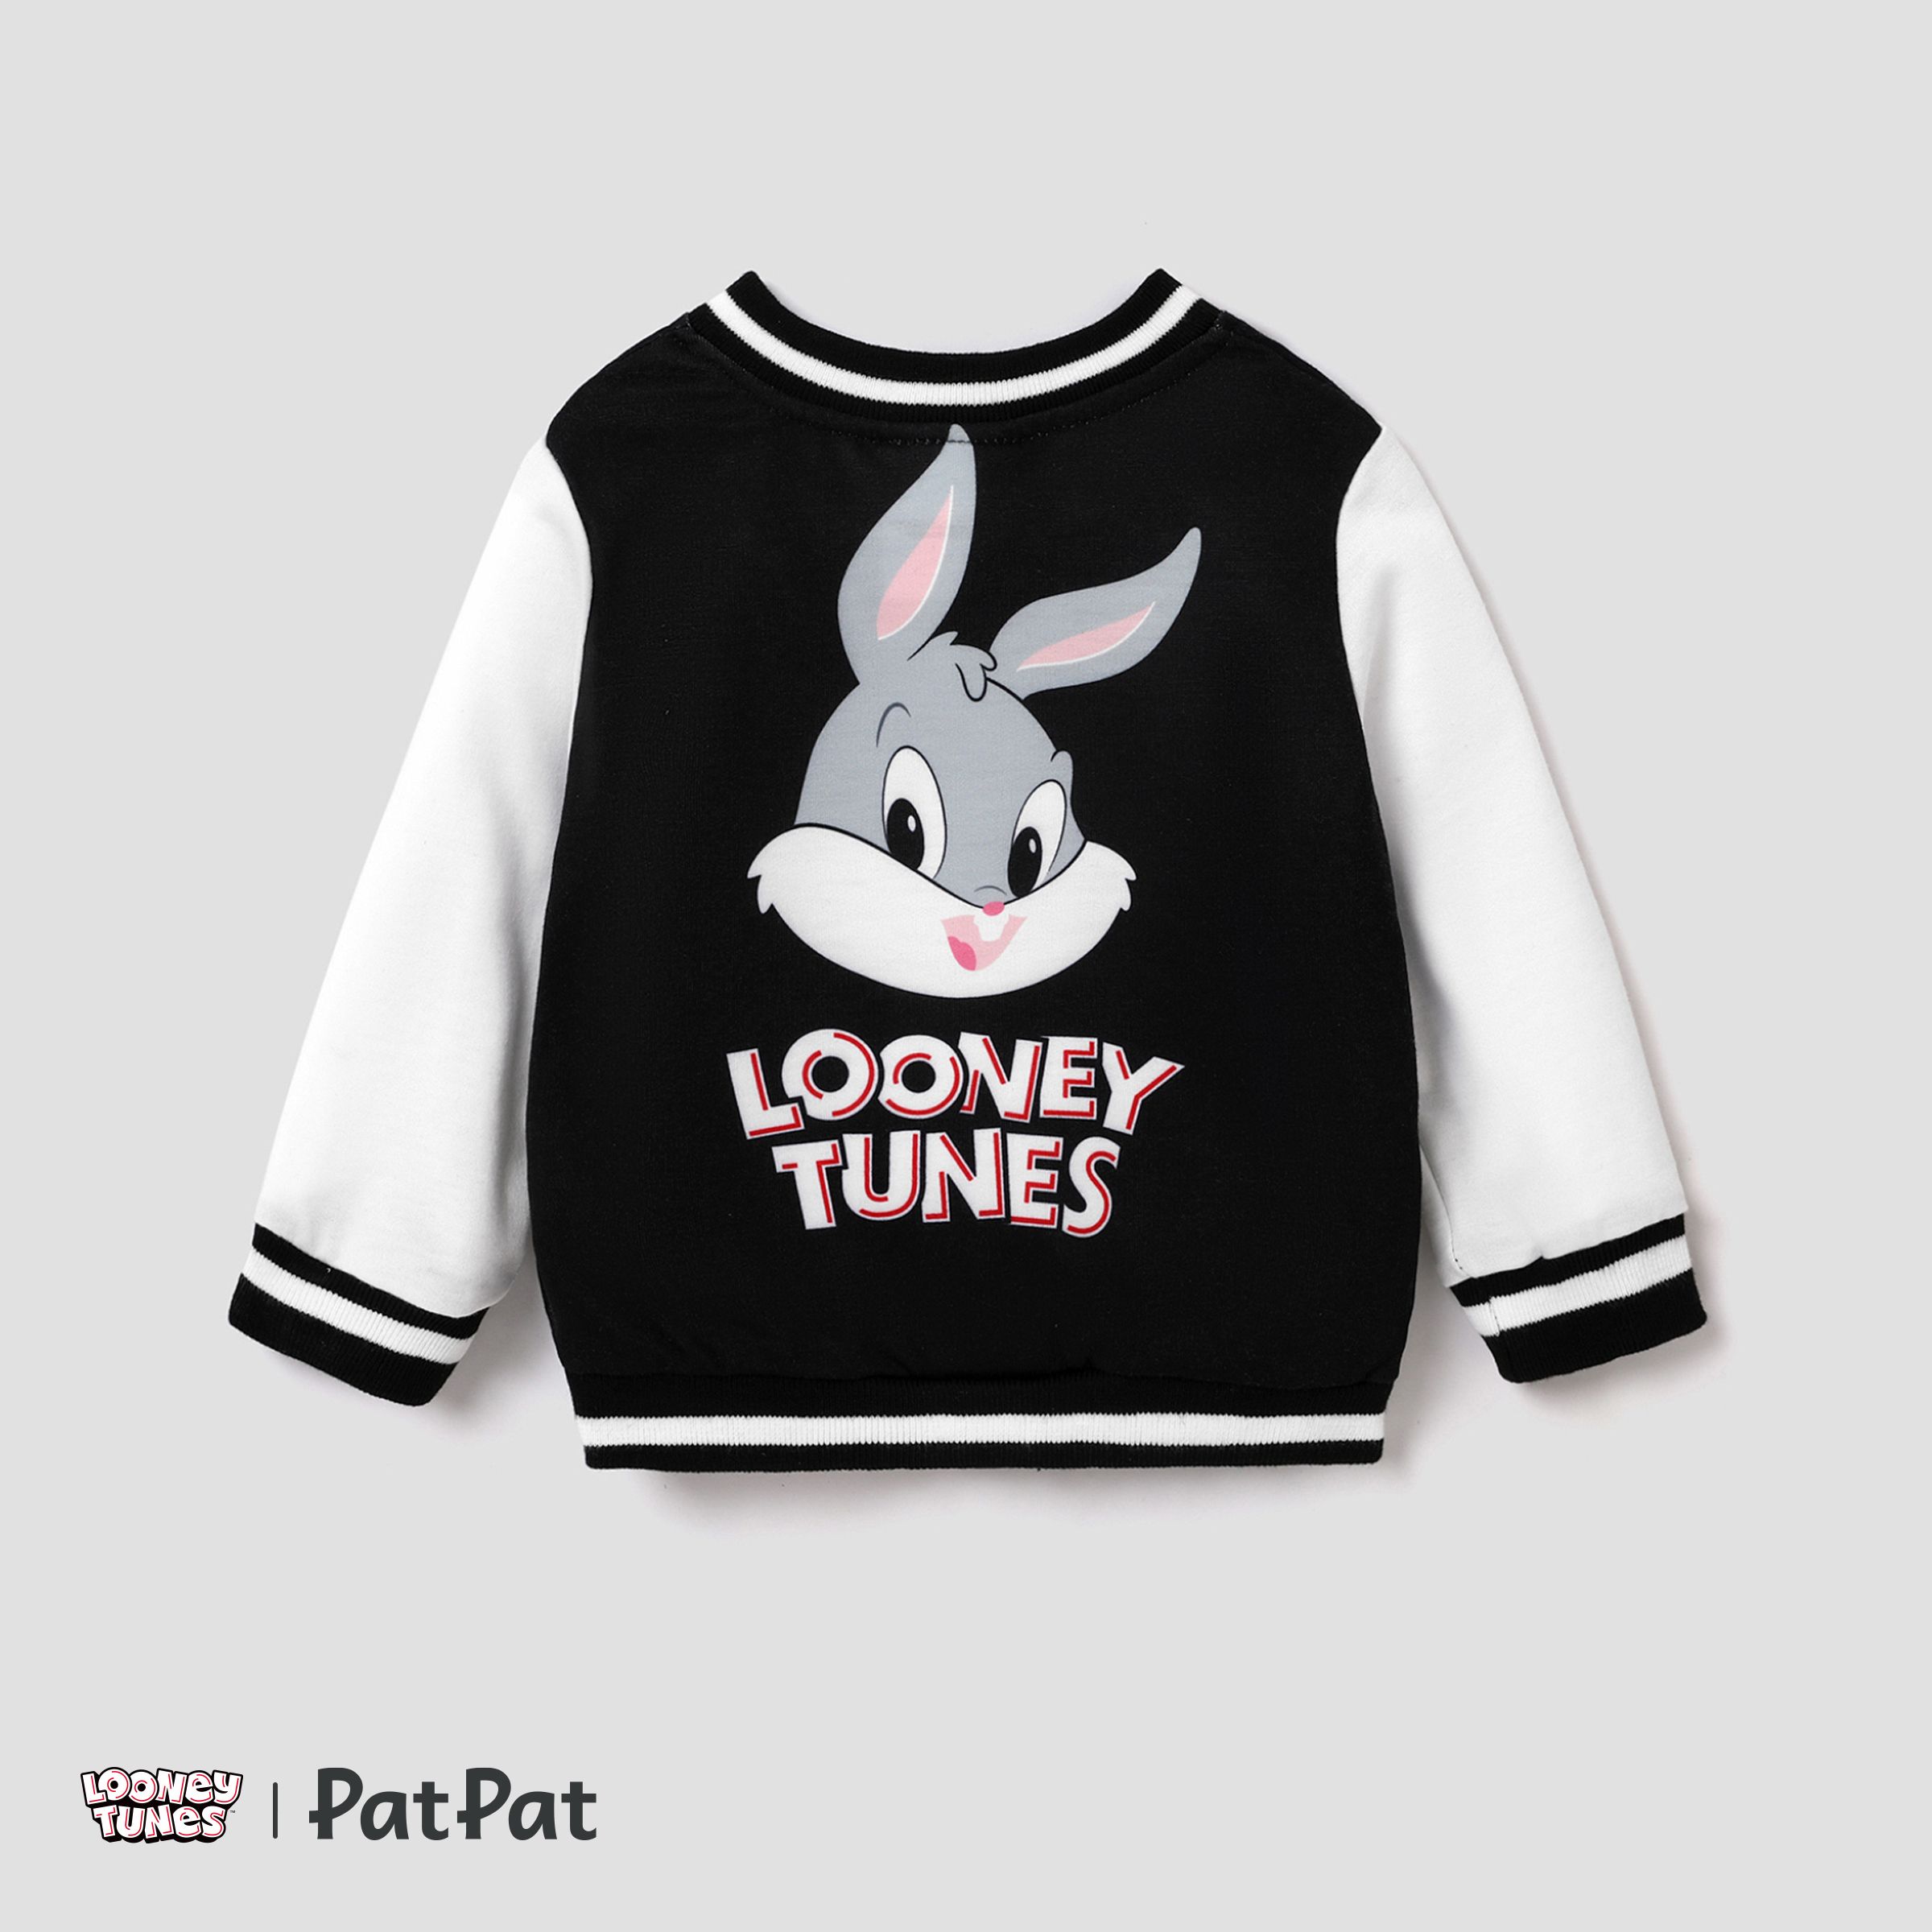 Looney Tunes Baby Boy/Girl Cartoon Animal Print Long-sleeve Jacket